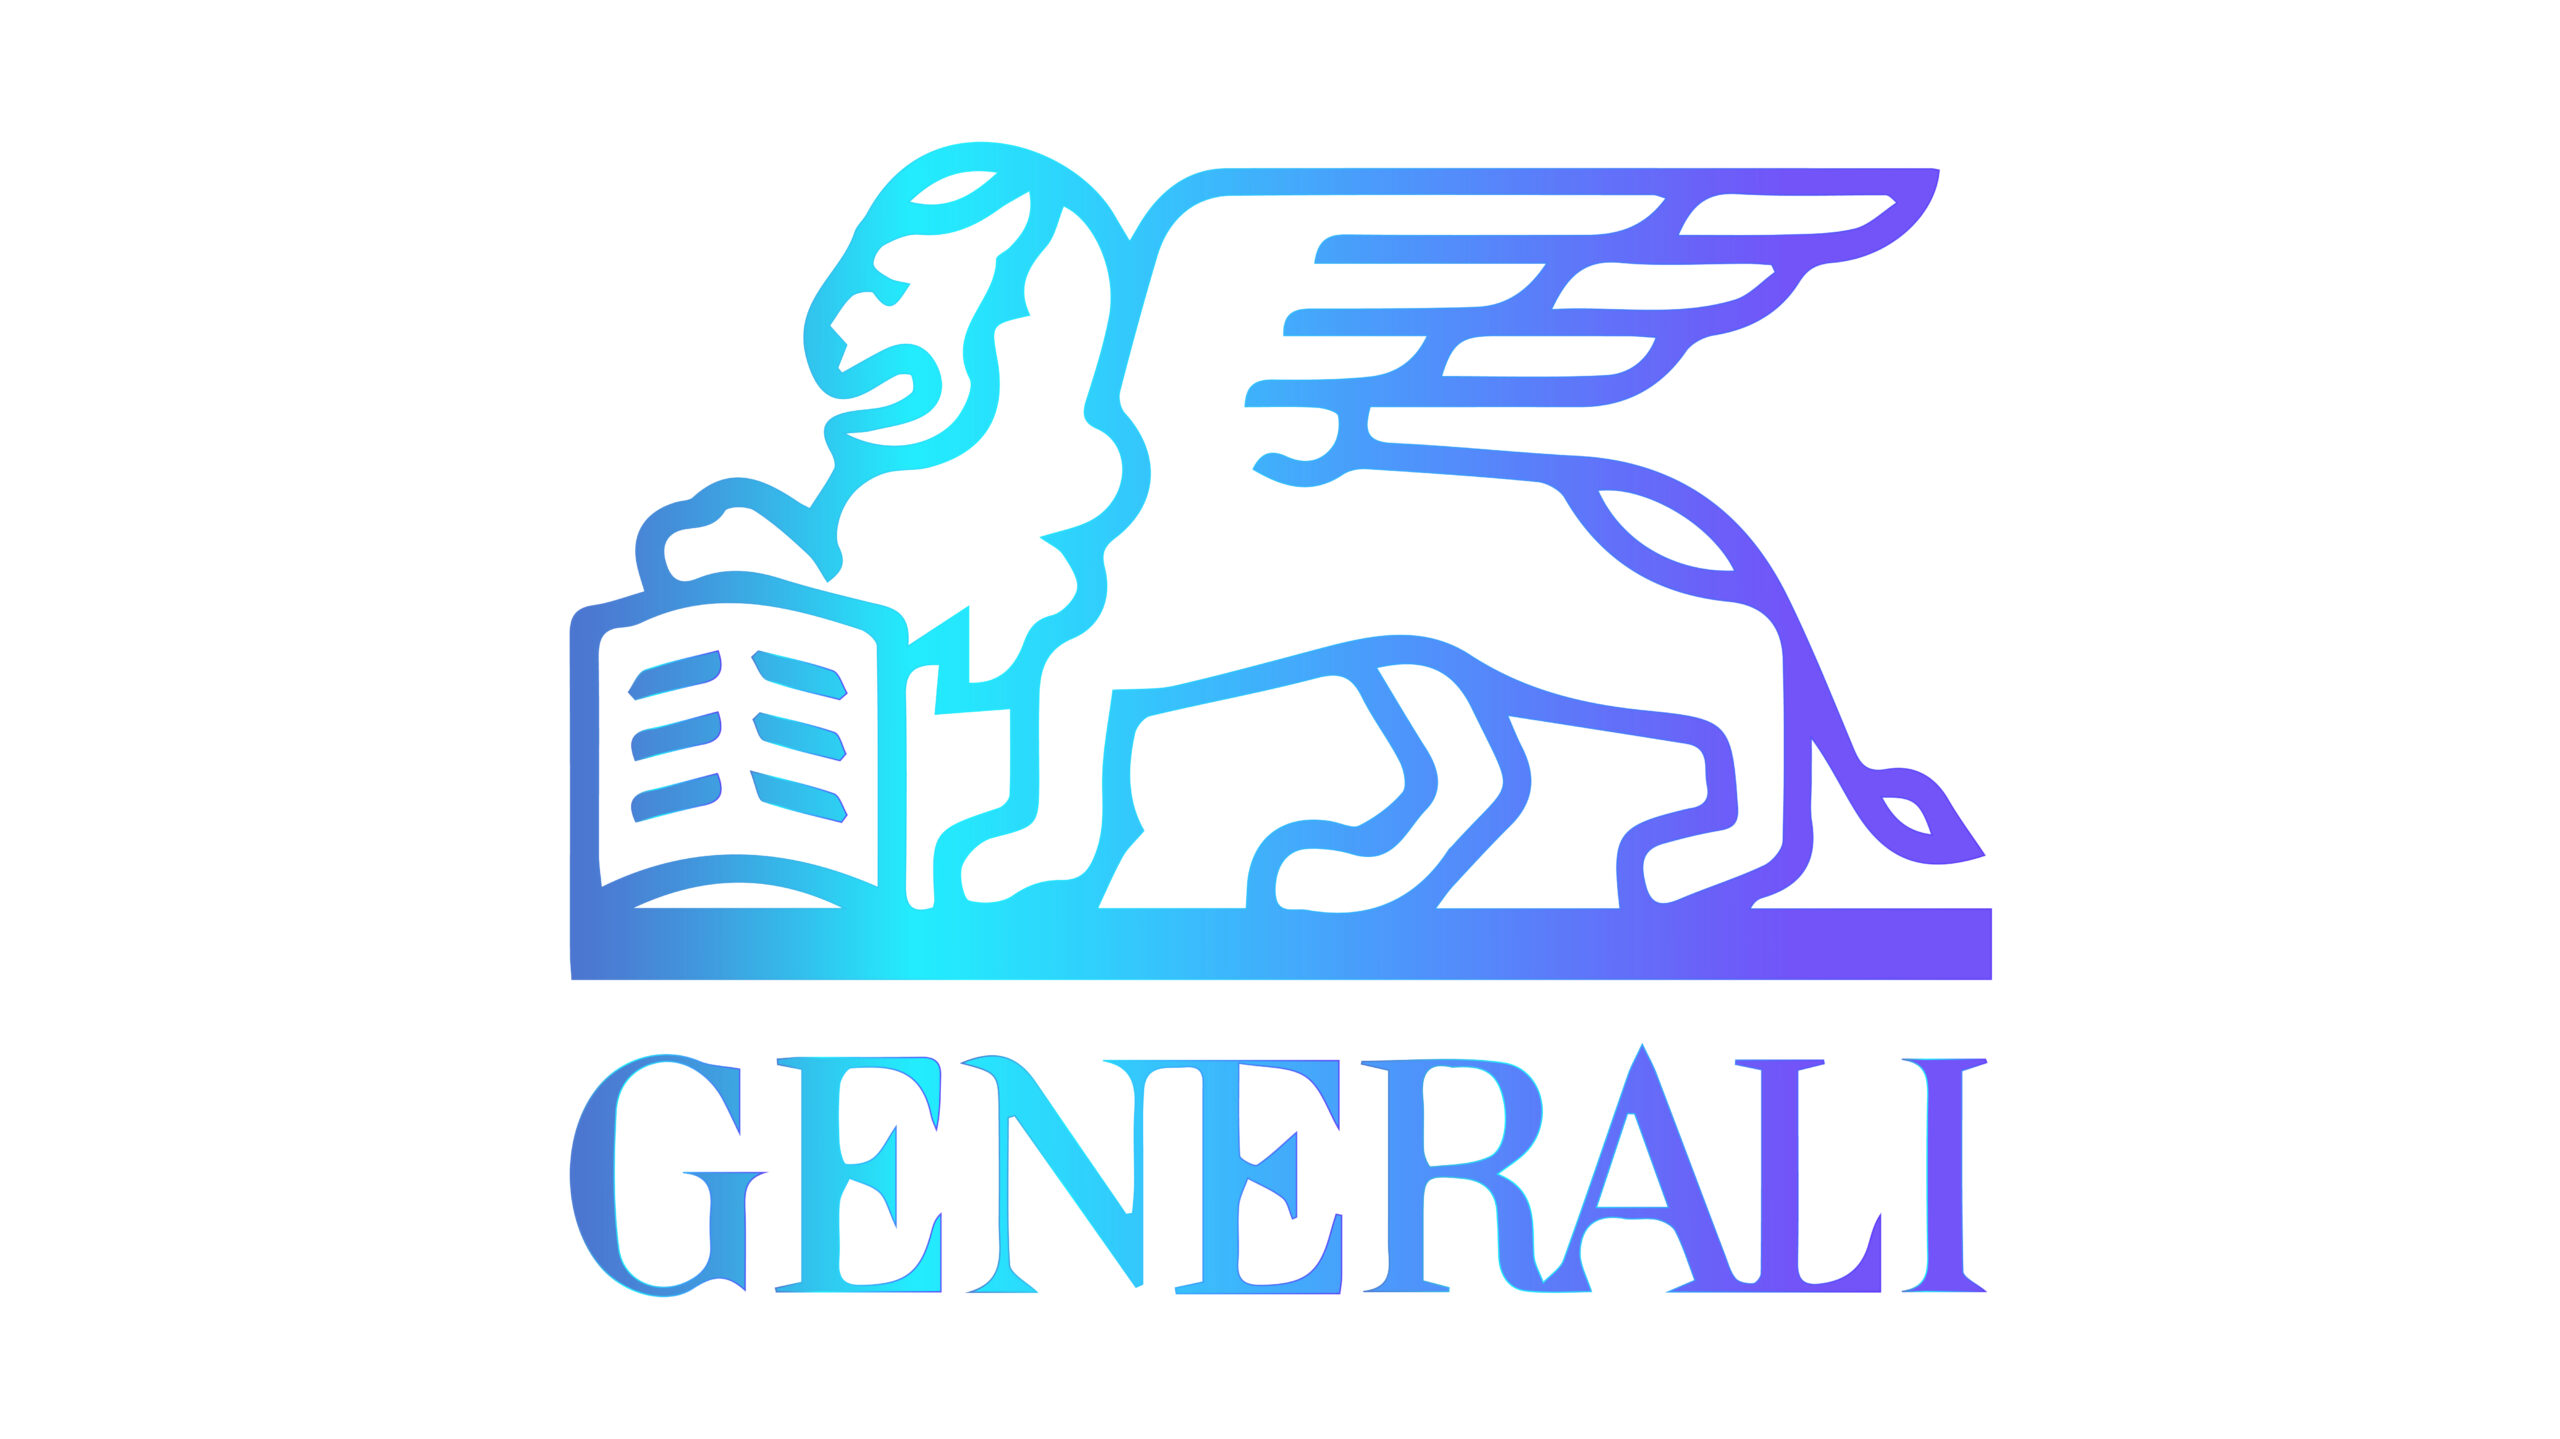 Generali Generali Global